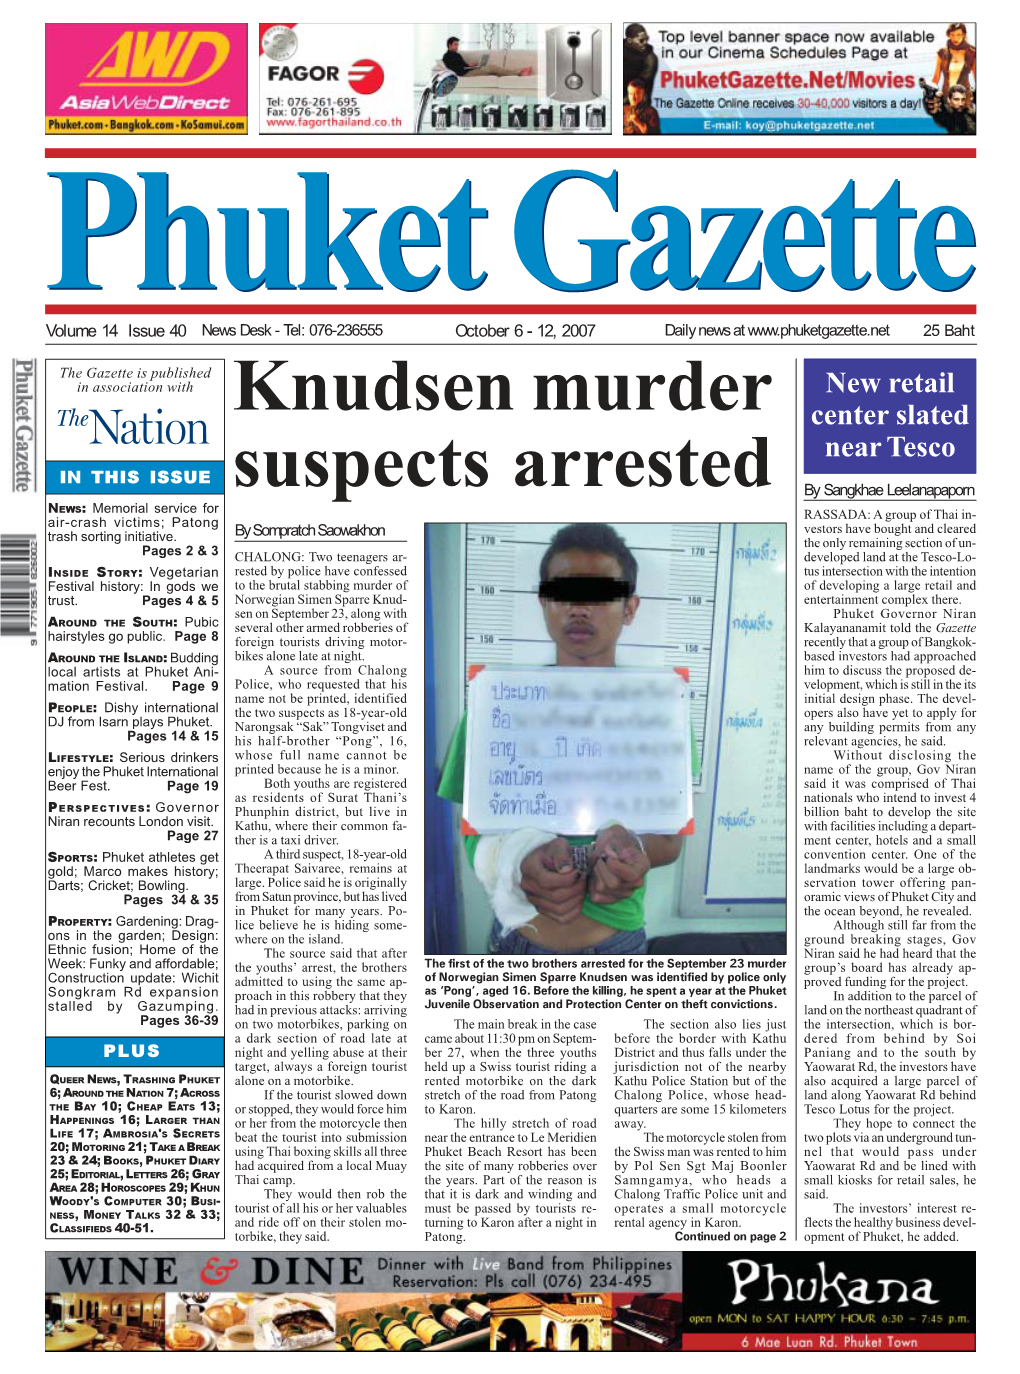 Knudsen Murder Suspects Arrested